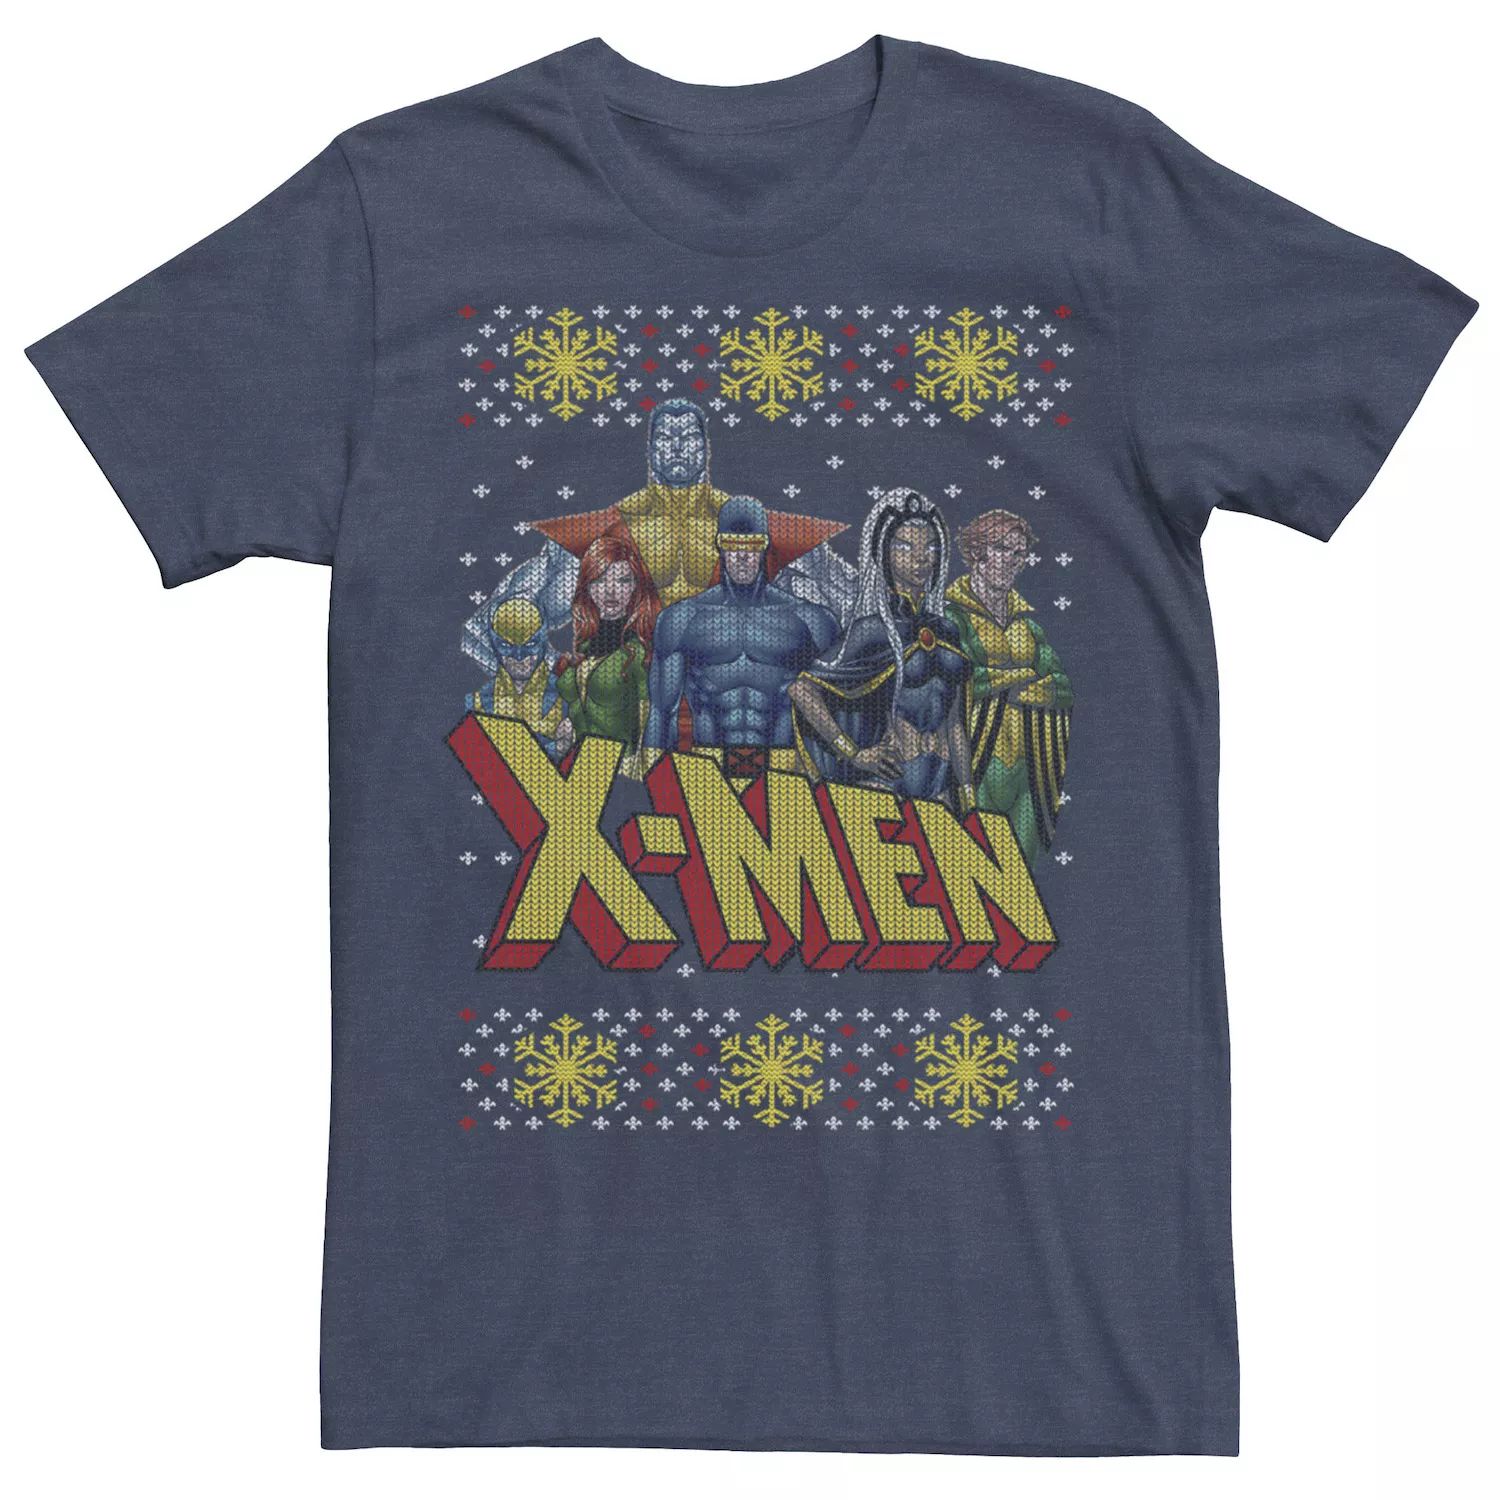 Мужской свитер с рисунком Ugly Christmas Group из Людей Икс Marvel мужской галстук с символом людей икс marvel